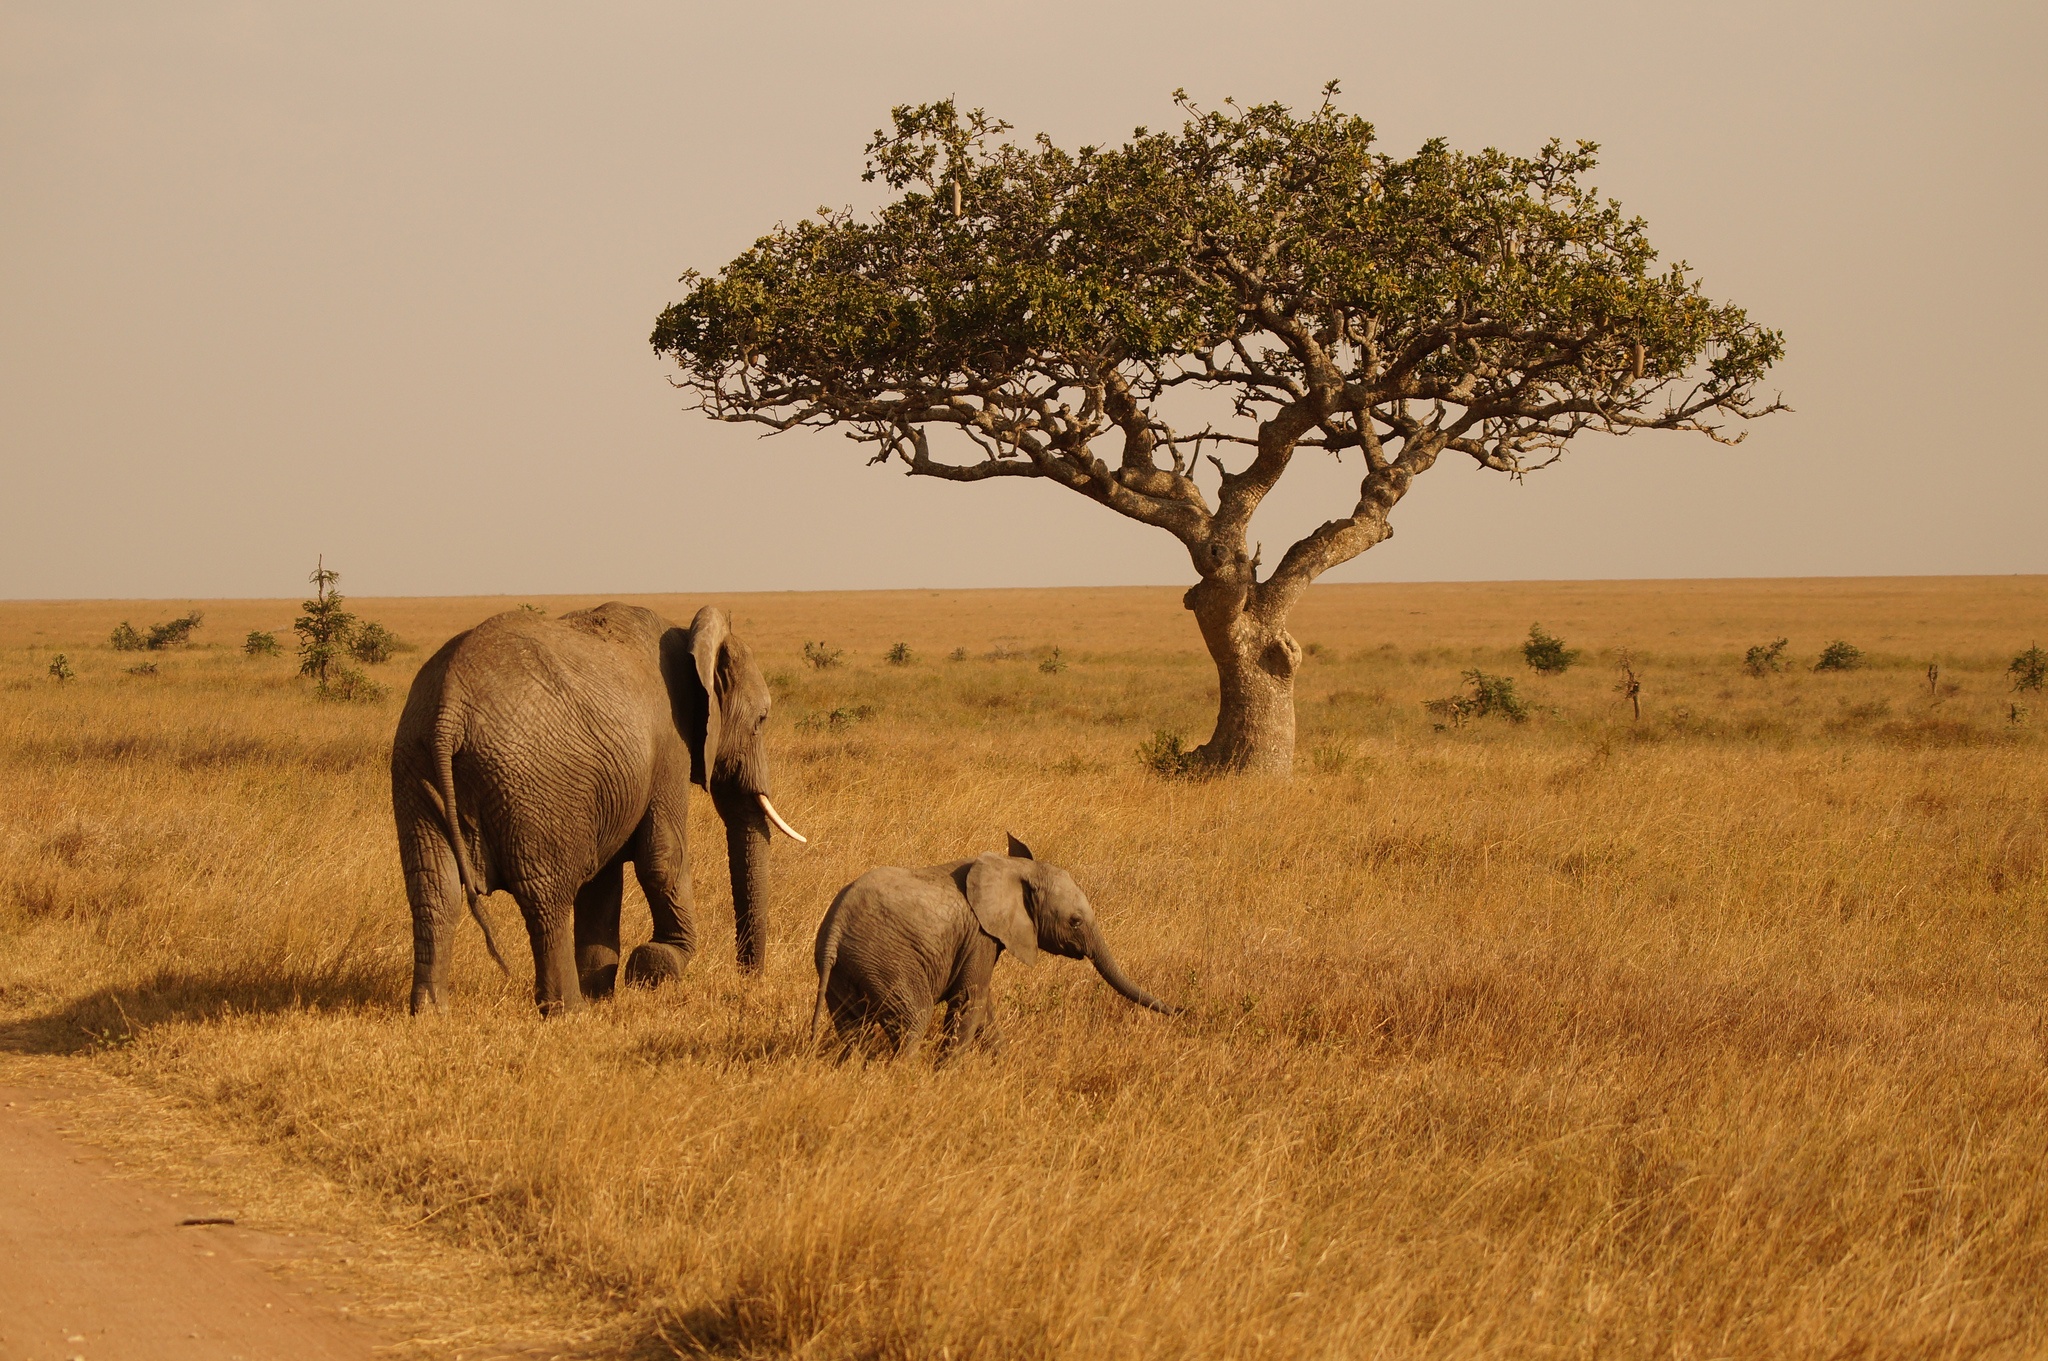 Tanzania - 9 Days in Serengeti, Ngorongoro & Tarangire National Park ...